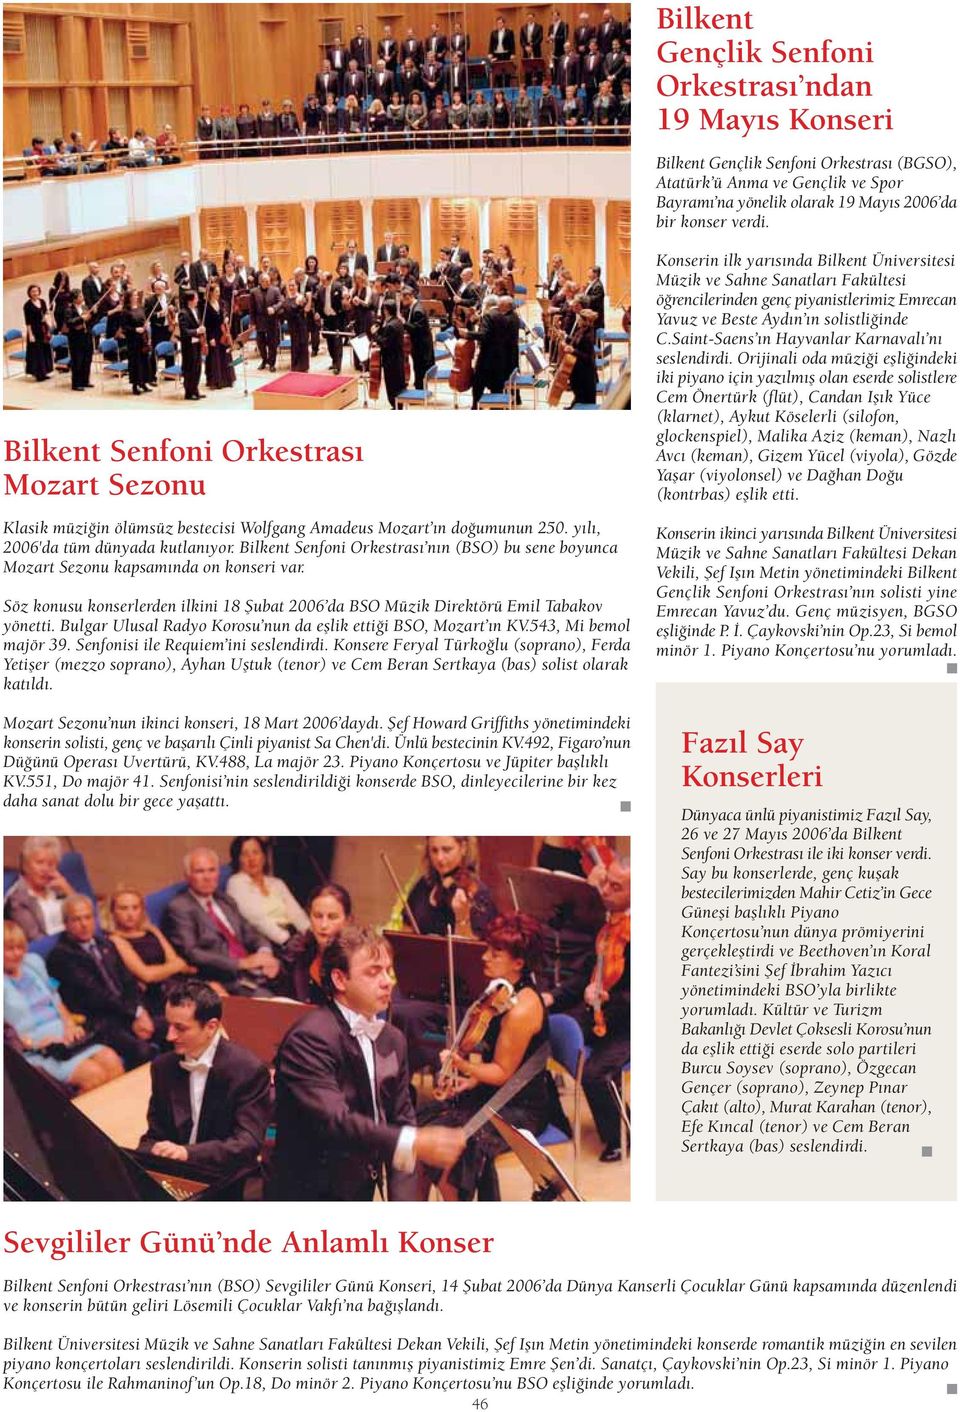 Bilkent Senfoni Orkestras n n (BSO) bu sene boyunca Mozart Sezonu kapsam nda on konseri var. Söz konusu konserlerden ilkini 18 fiubat 2006 da BSO Müzik Direktörü Emil Tabakov yönetti.